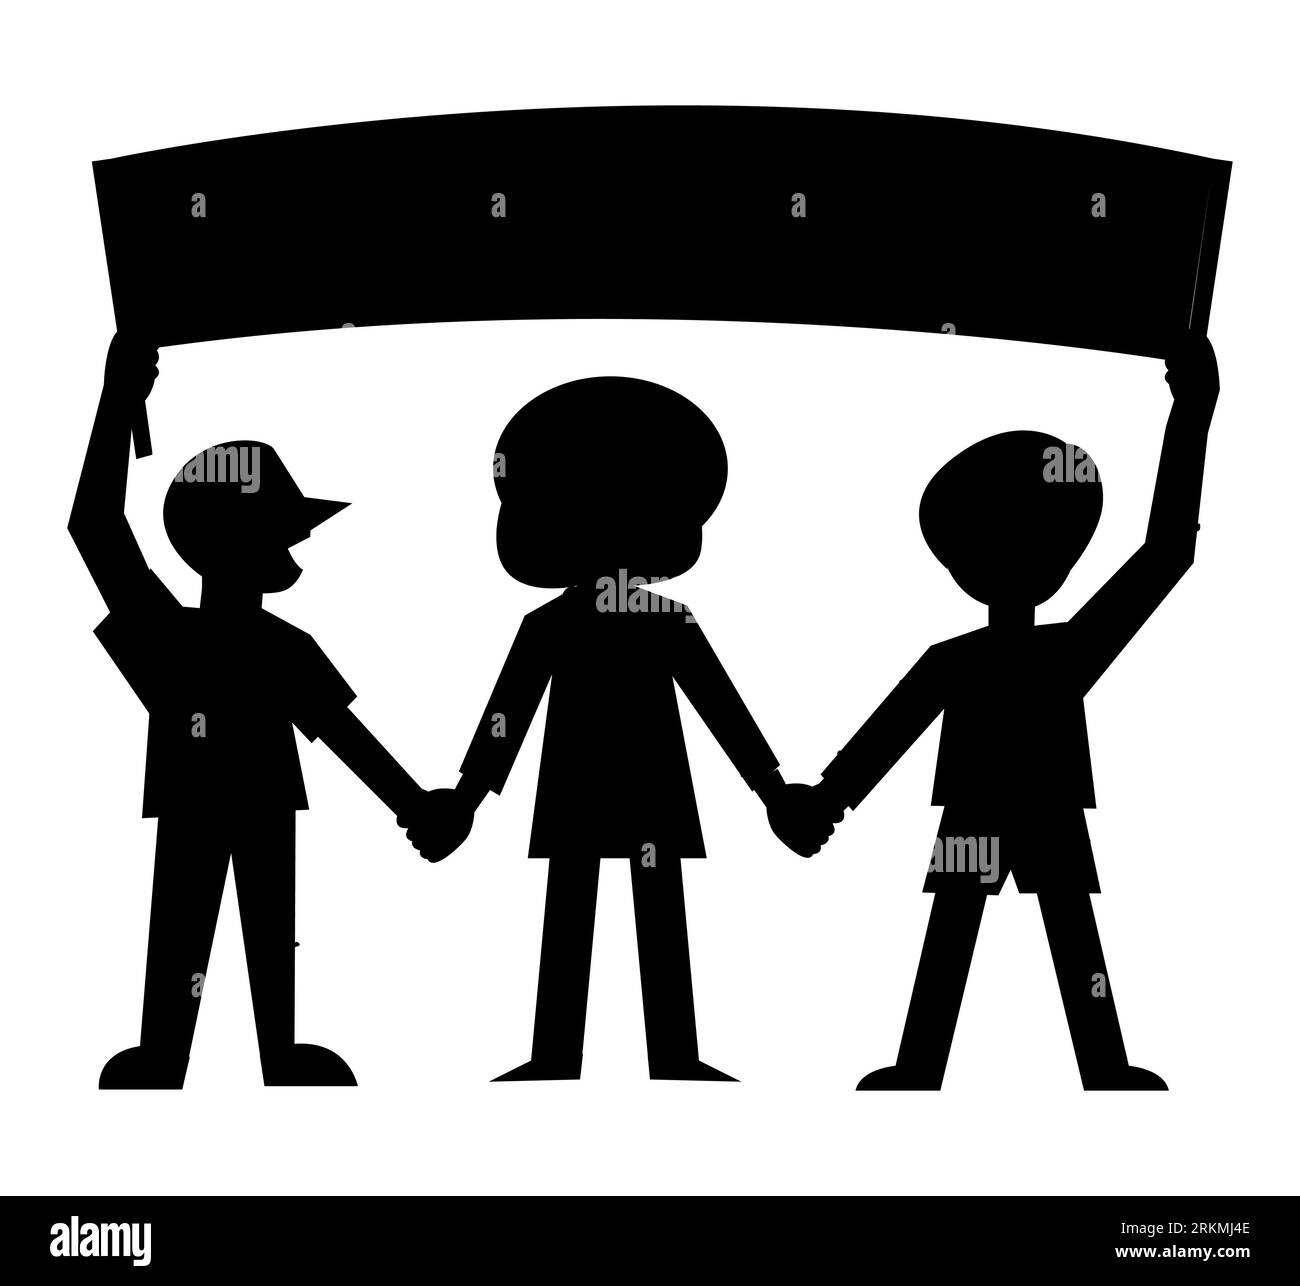 Schwarze Silhouette des Protestes für Rechte: Menschen mit Bannern, Vektorillustration isoliert auf weißem Hintergrund, Zeichentrickfiguren Stock Vektor